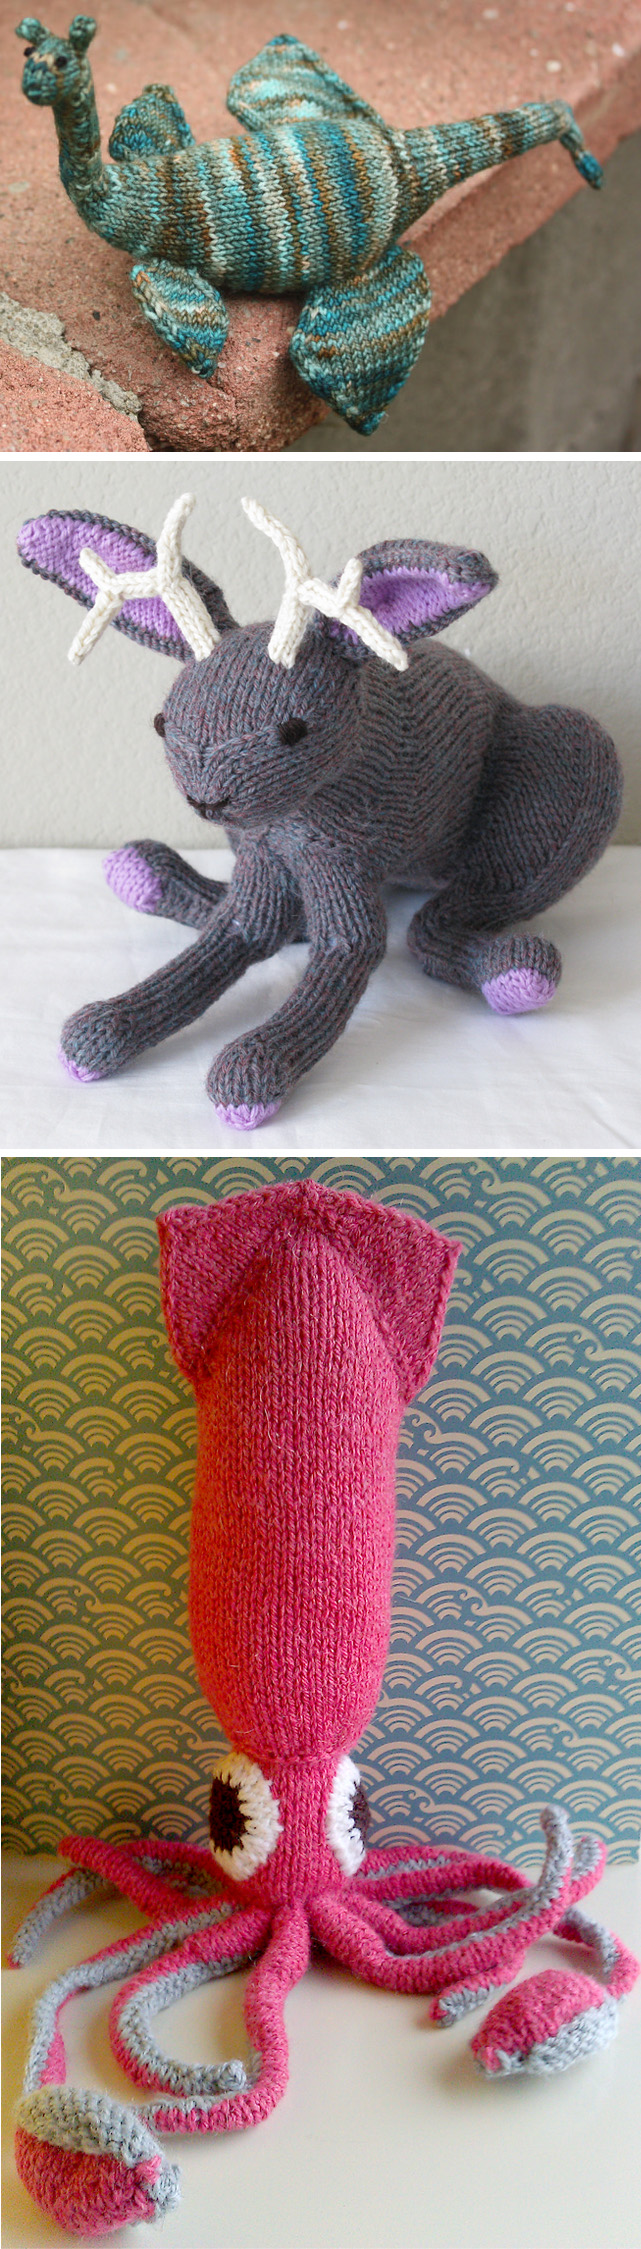 Knitting Patterns for Loch Ness Monster, Jackalope, and Kraken